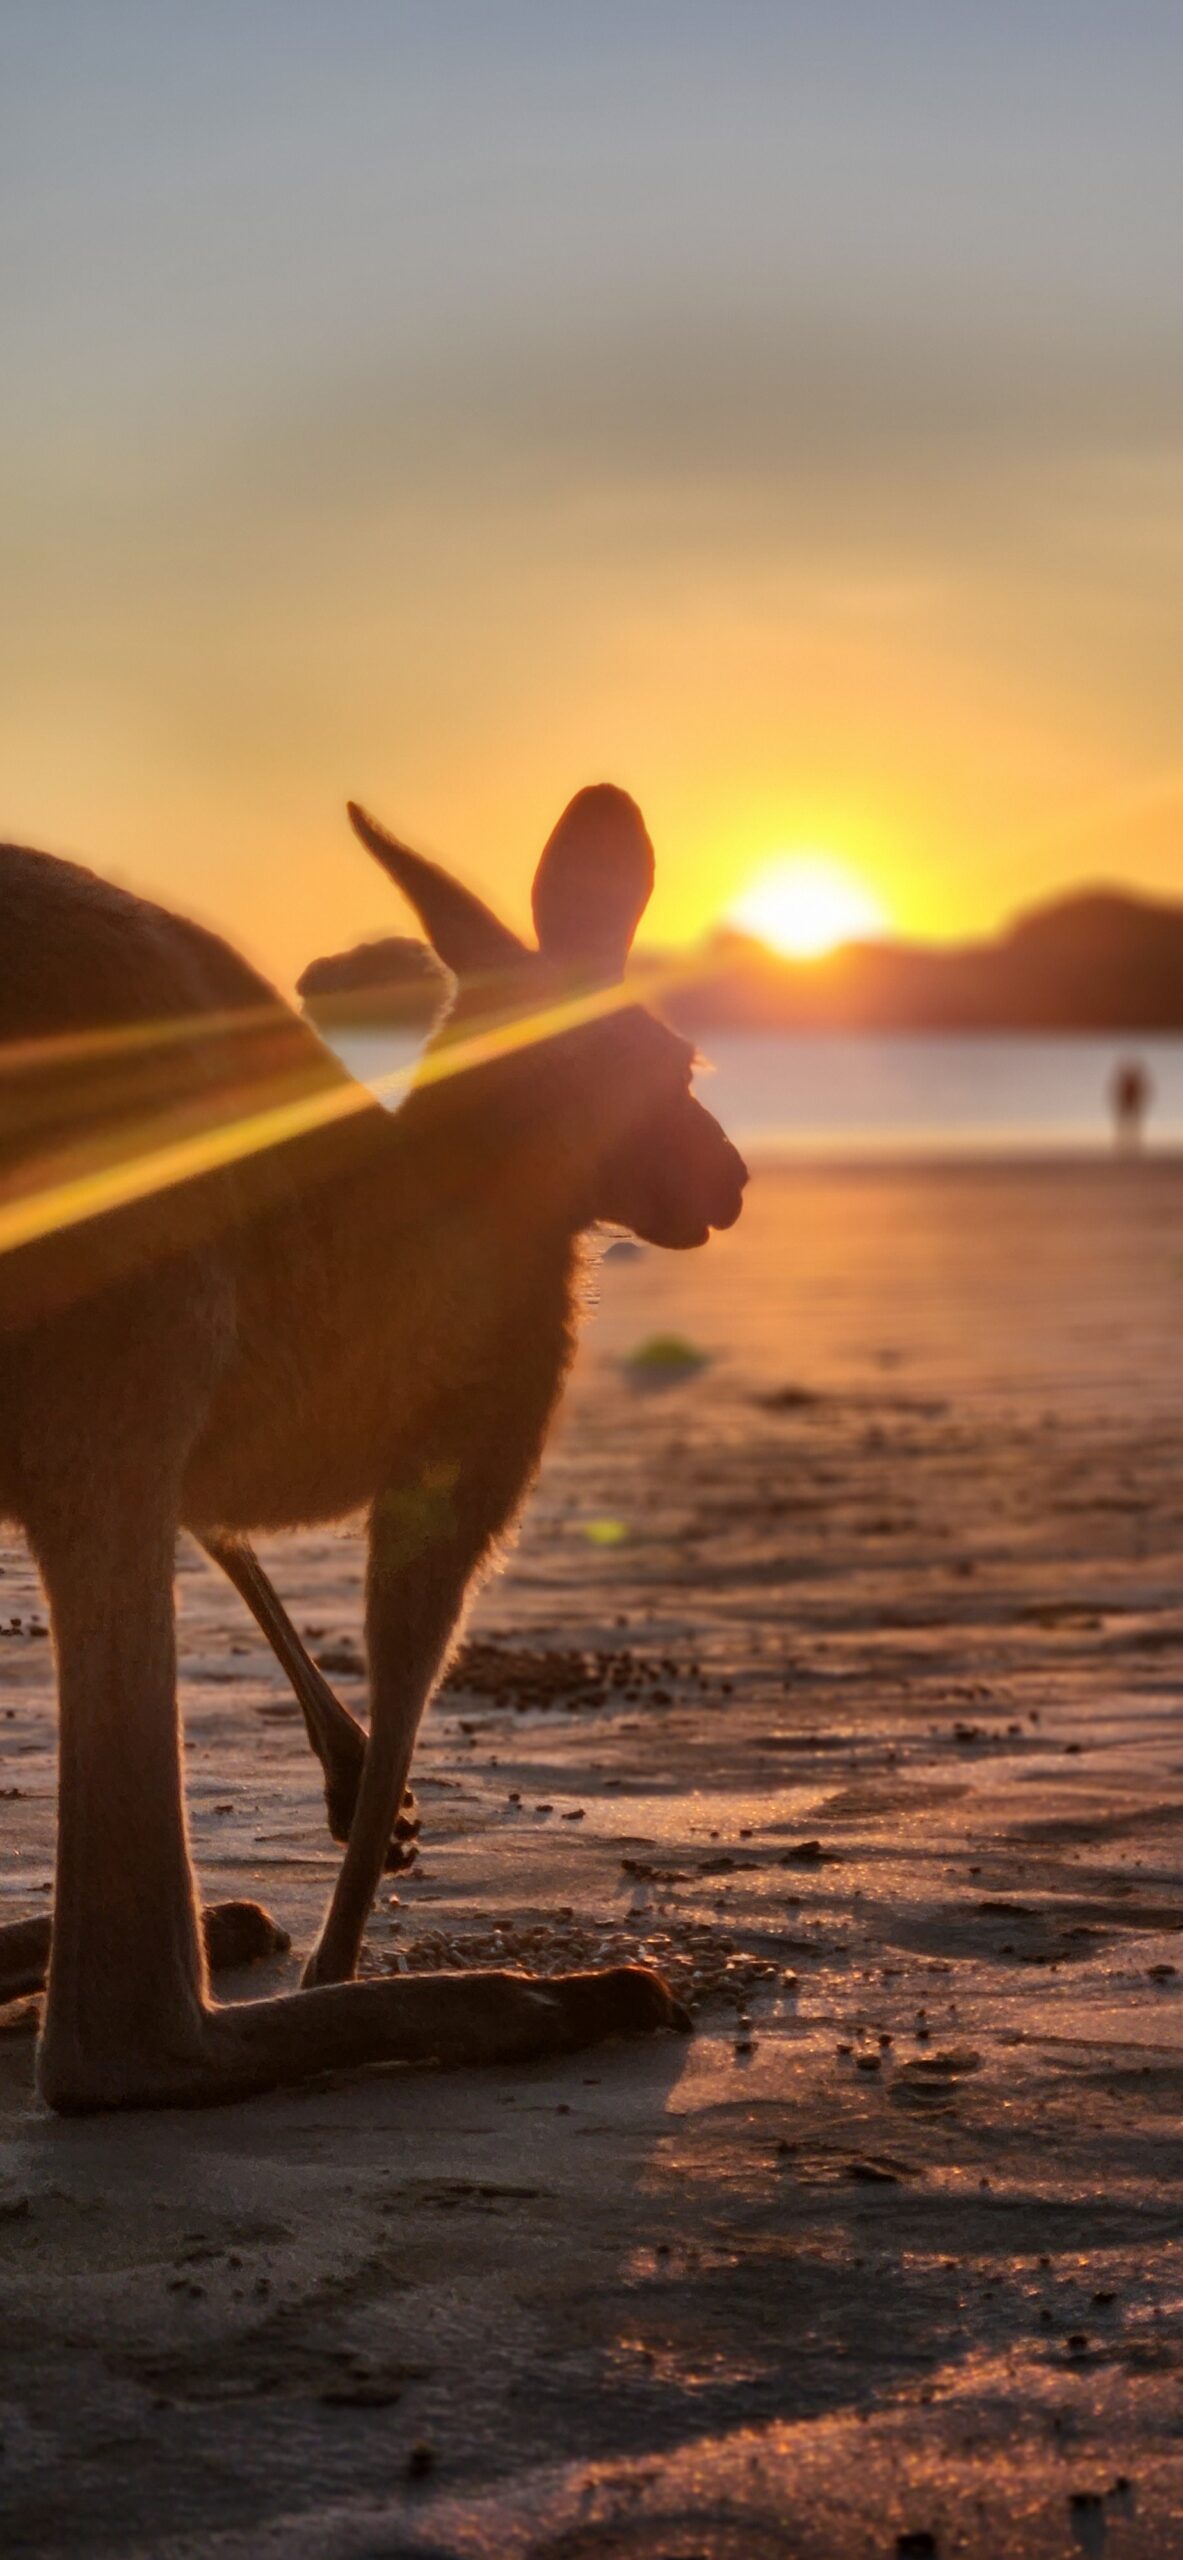 Sunrise with kangaroos-departs Airlie Beach